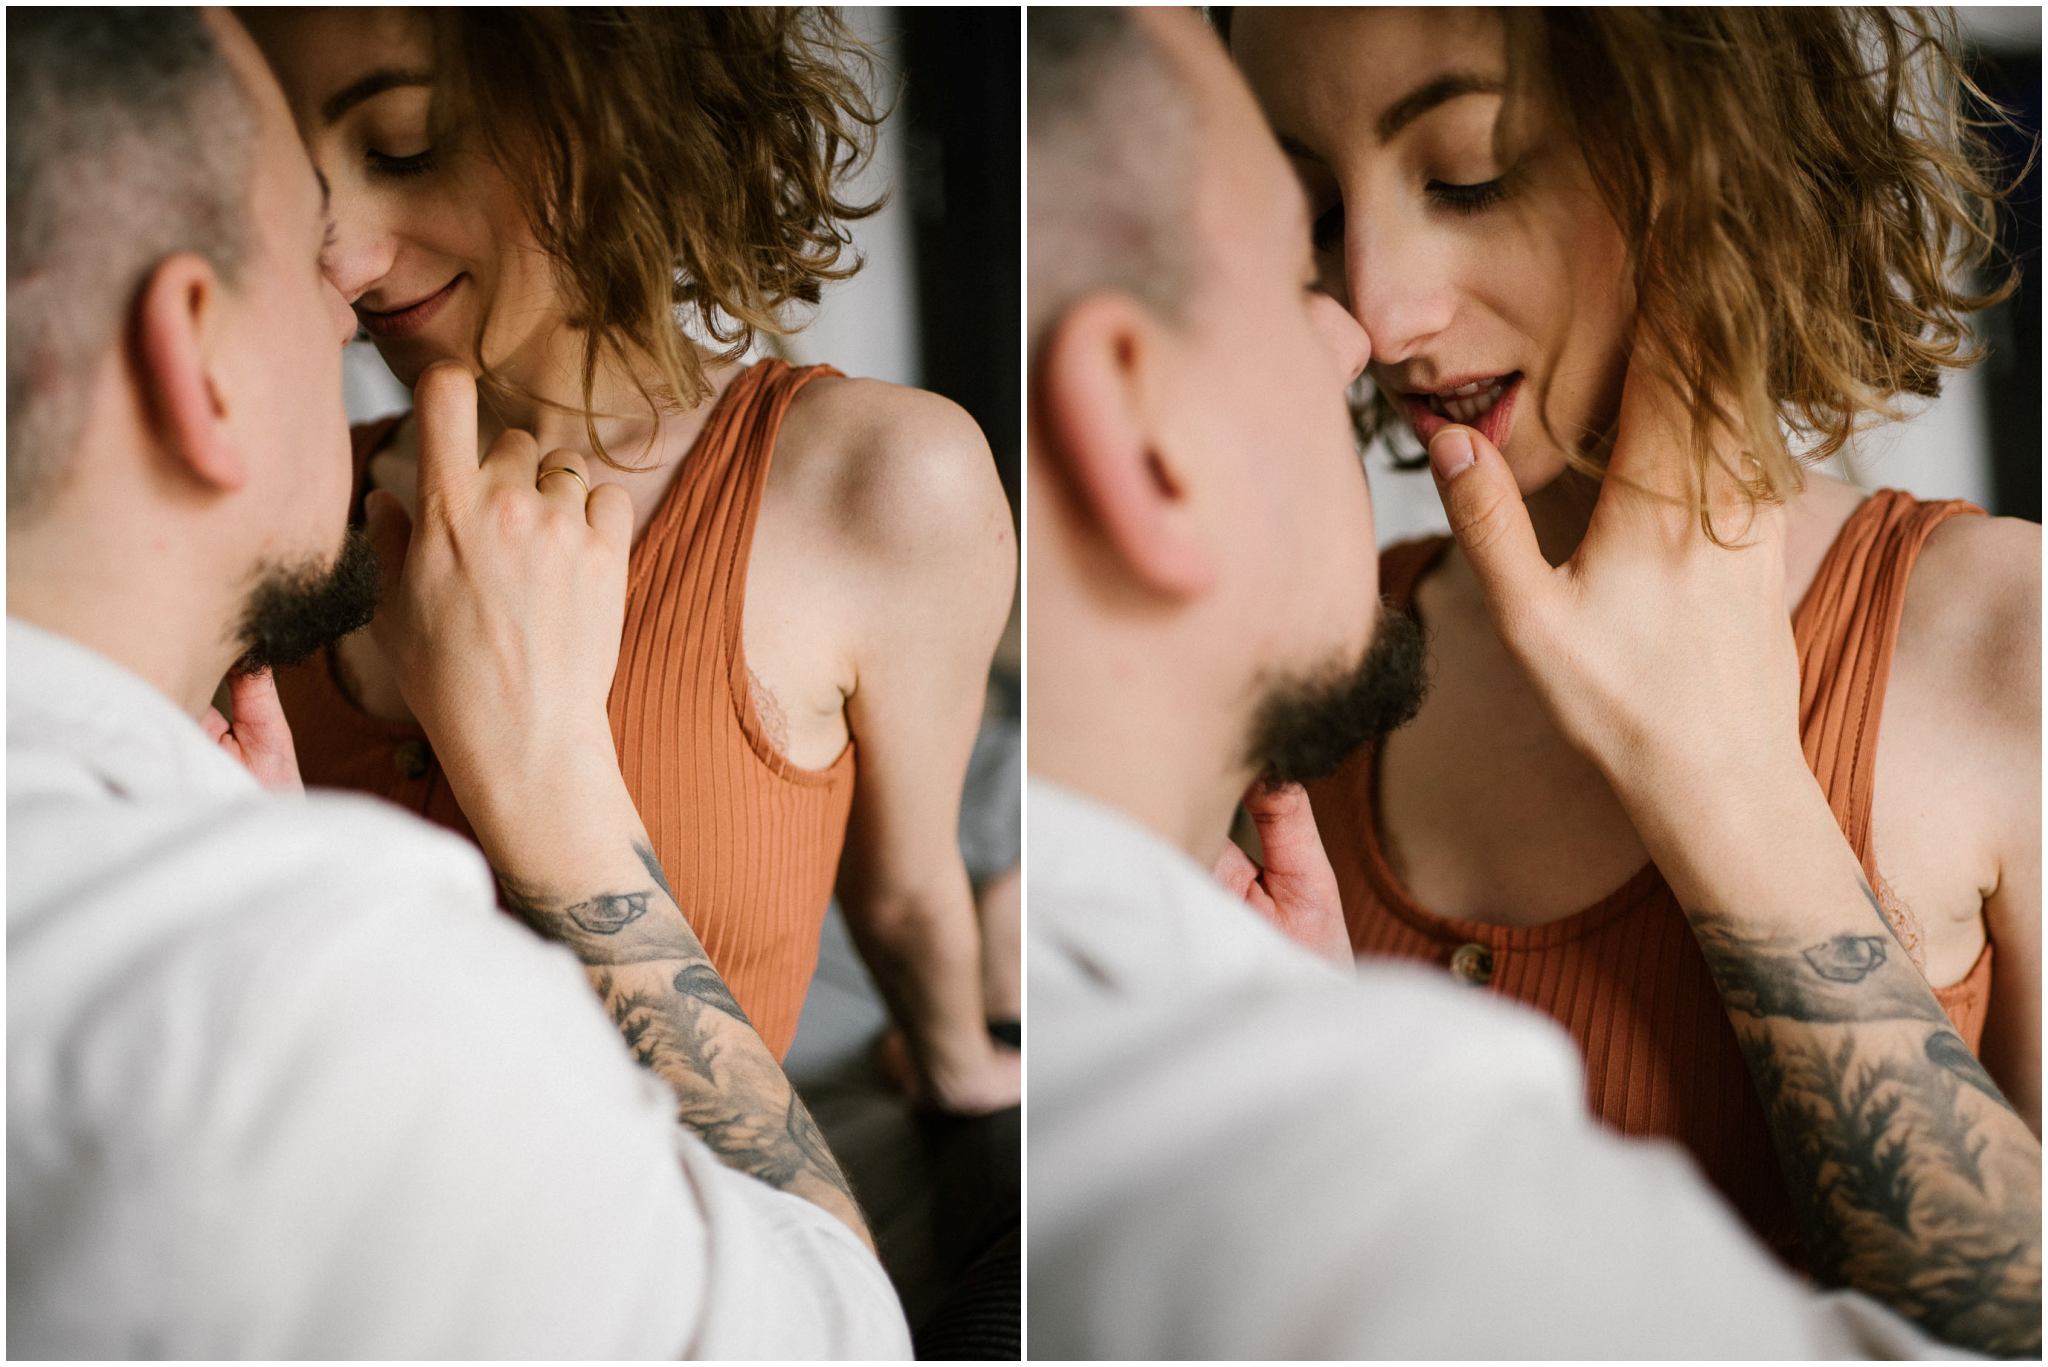 Narzeczeni patrzą sobie w oczy i się przytulają - sesja sensualna pary lifestyle w Poznaniu